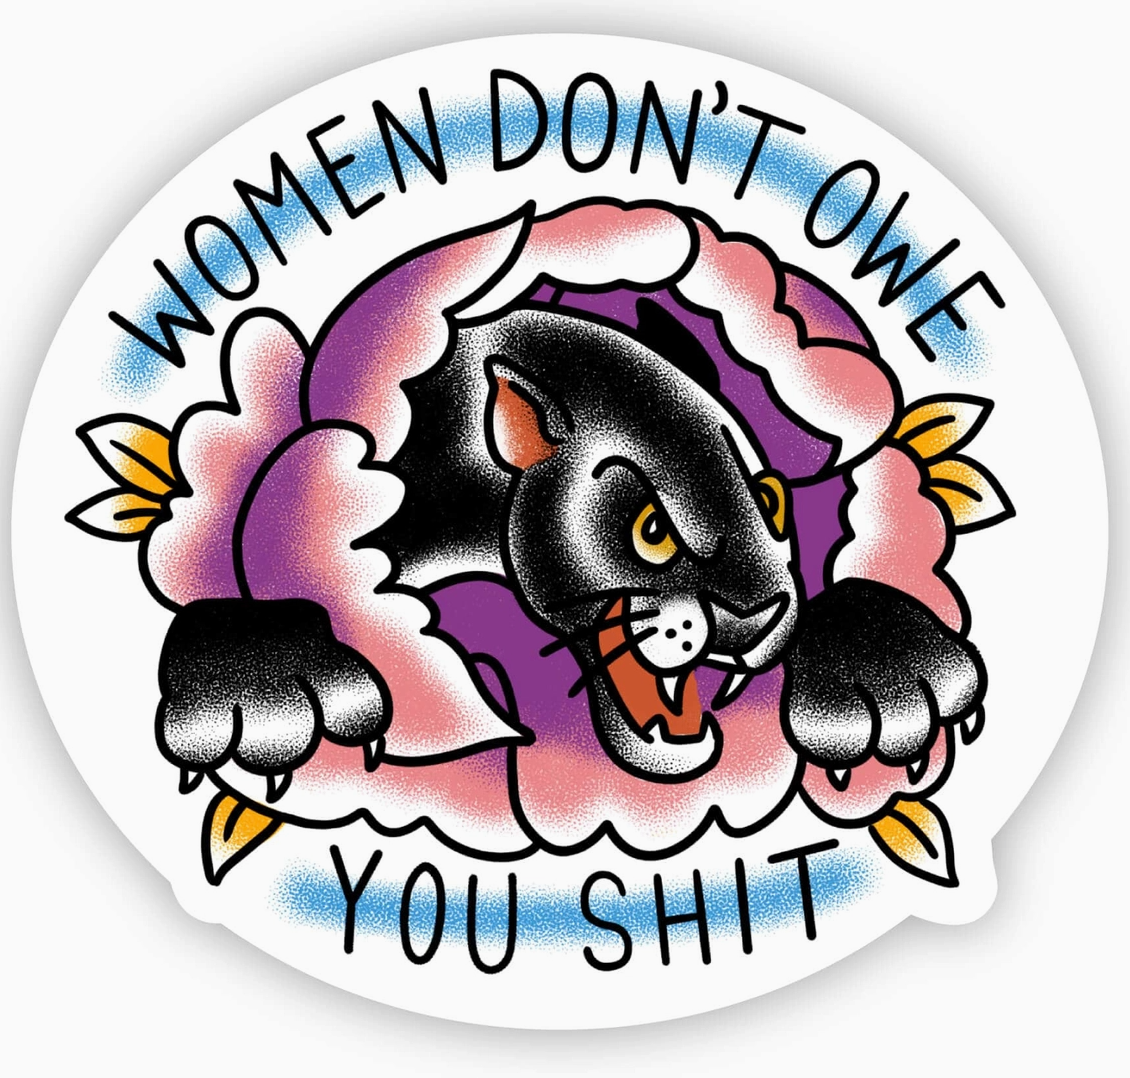 "Women Don't Owe You Shit" Sticker